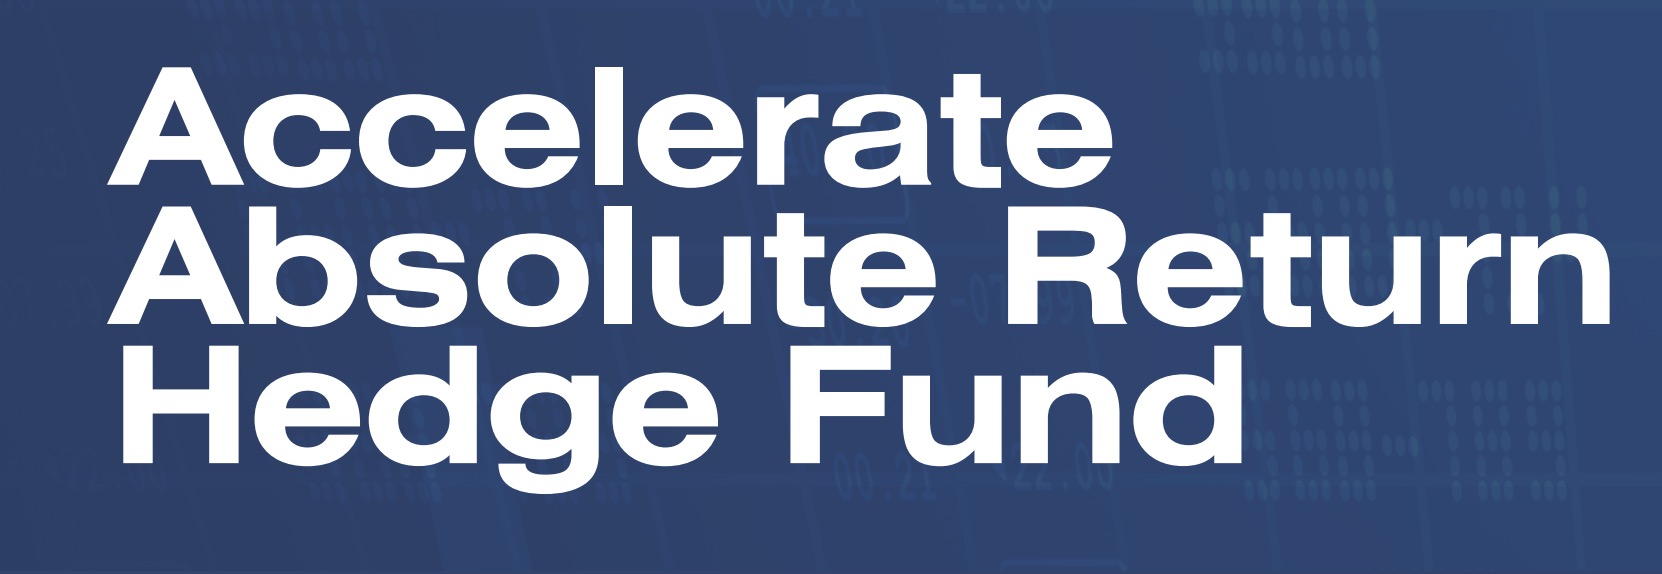 Accelerate Absolute Return Hedge Fund Logo 